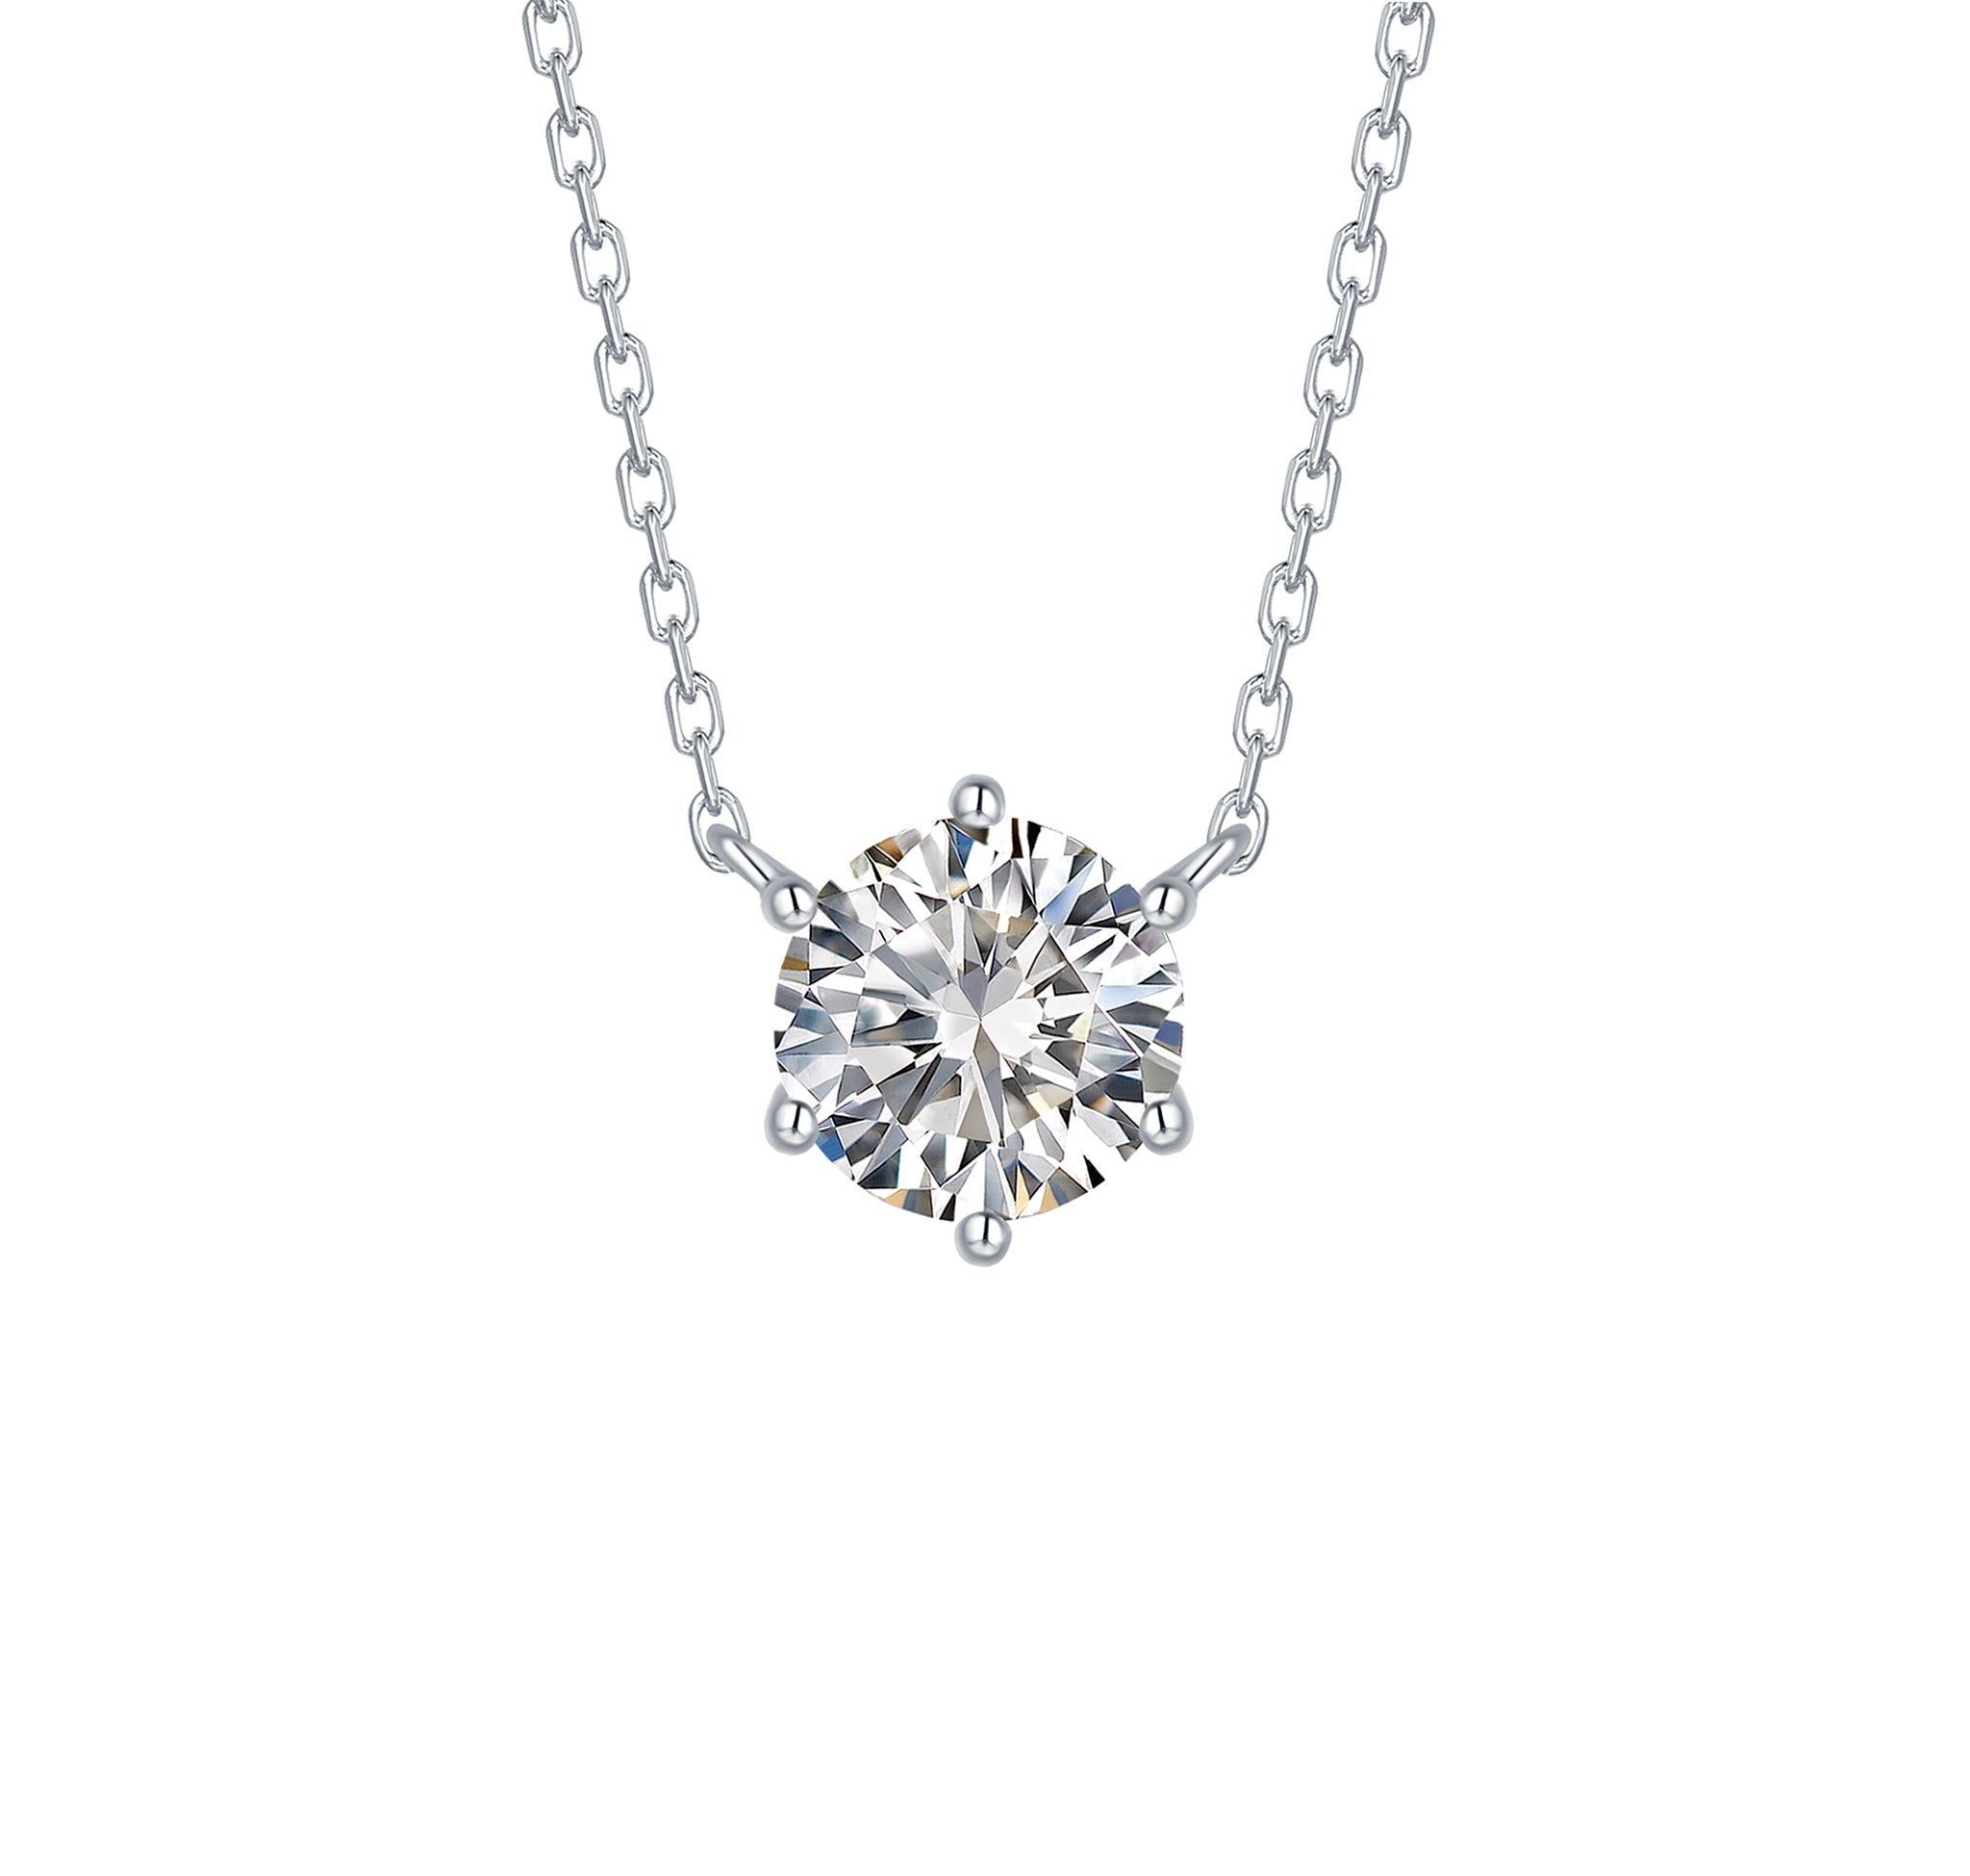 Lab Grown Diamond Jewelry Diamond Necklace 1CT Round Cut - China Lab Diamond  and Synthetic Diamond price | Made-in-China.com